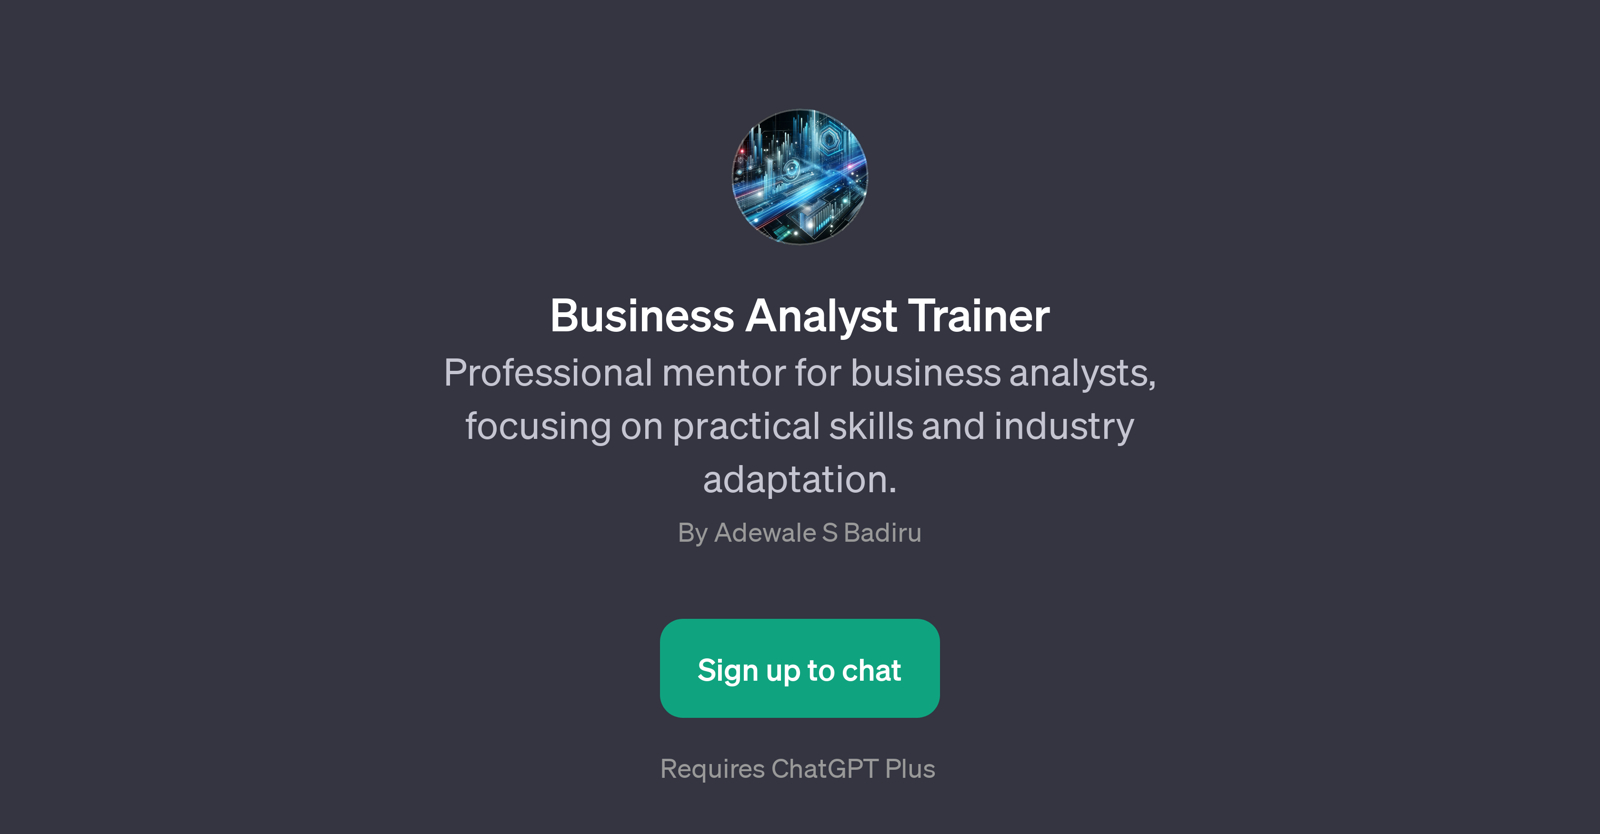 Business Analyst Trainer website